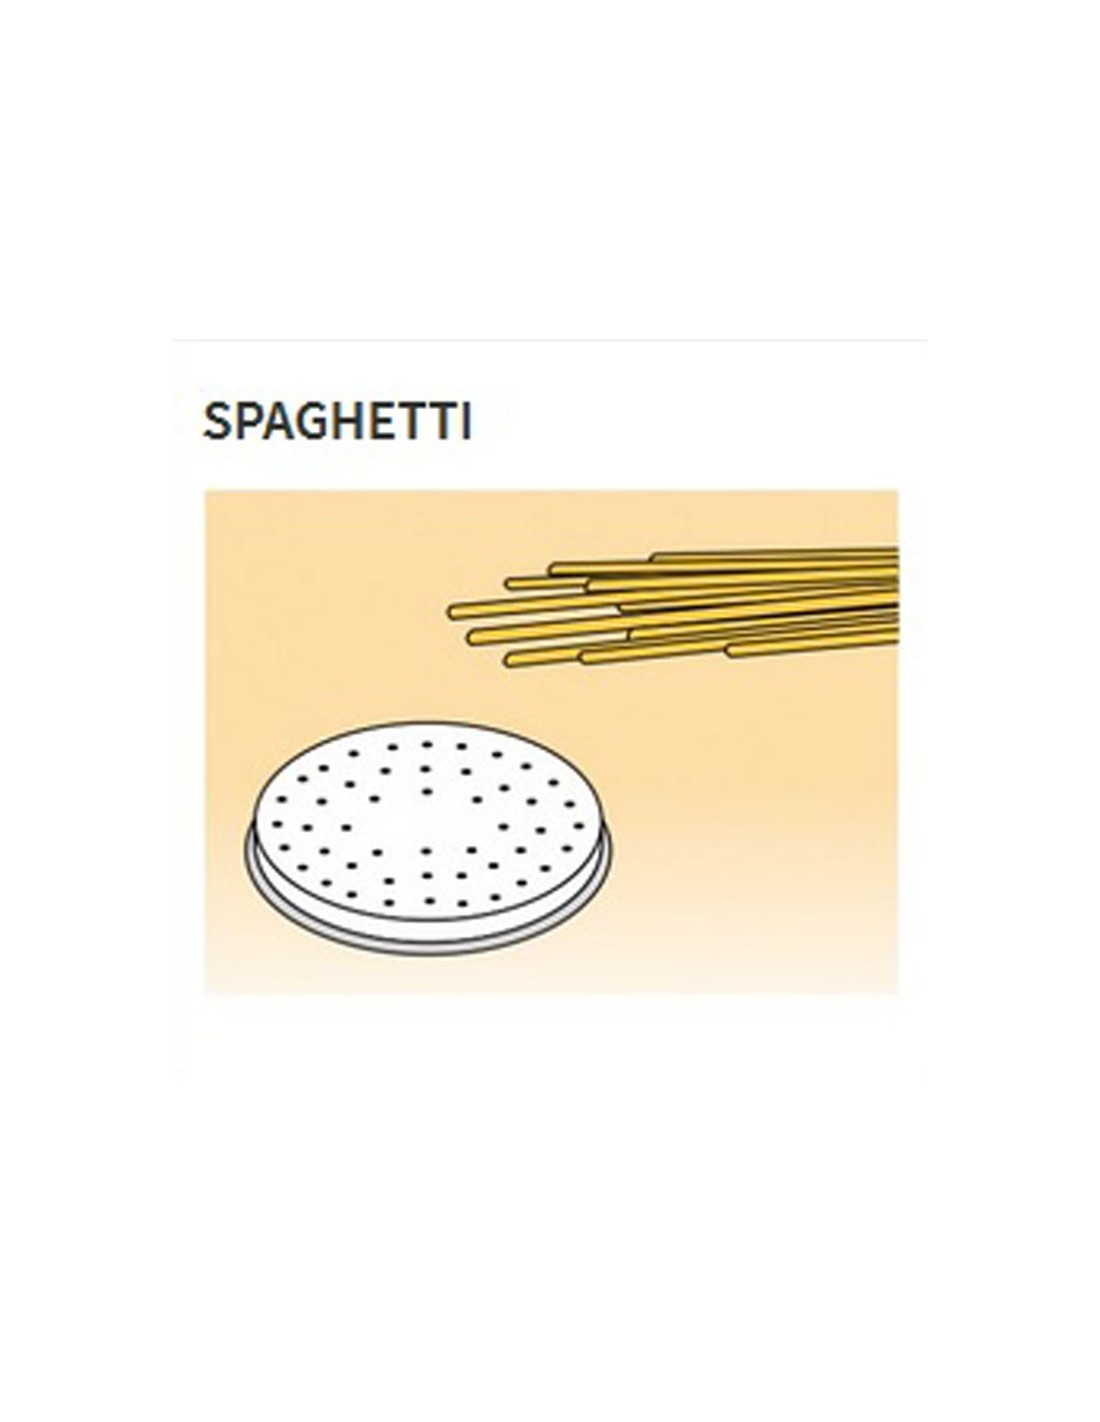 Trafile formati vari in lega ottone - Bronzo - Per macchina pasta fresca modello MPF25 - MPF4N - Spaghetti Ø mm 2